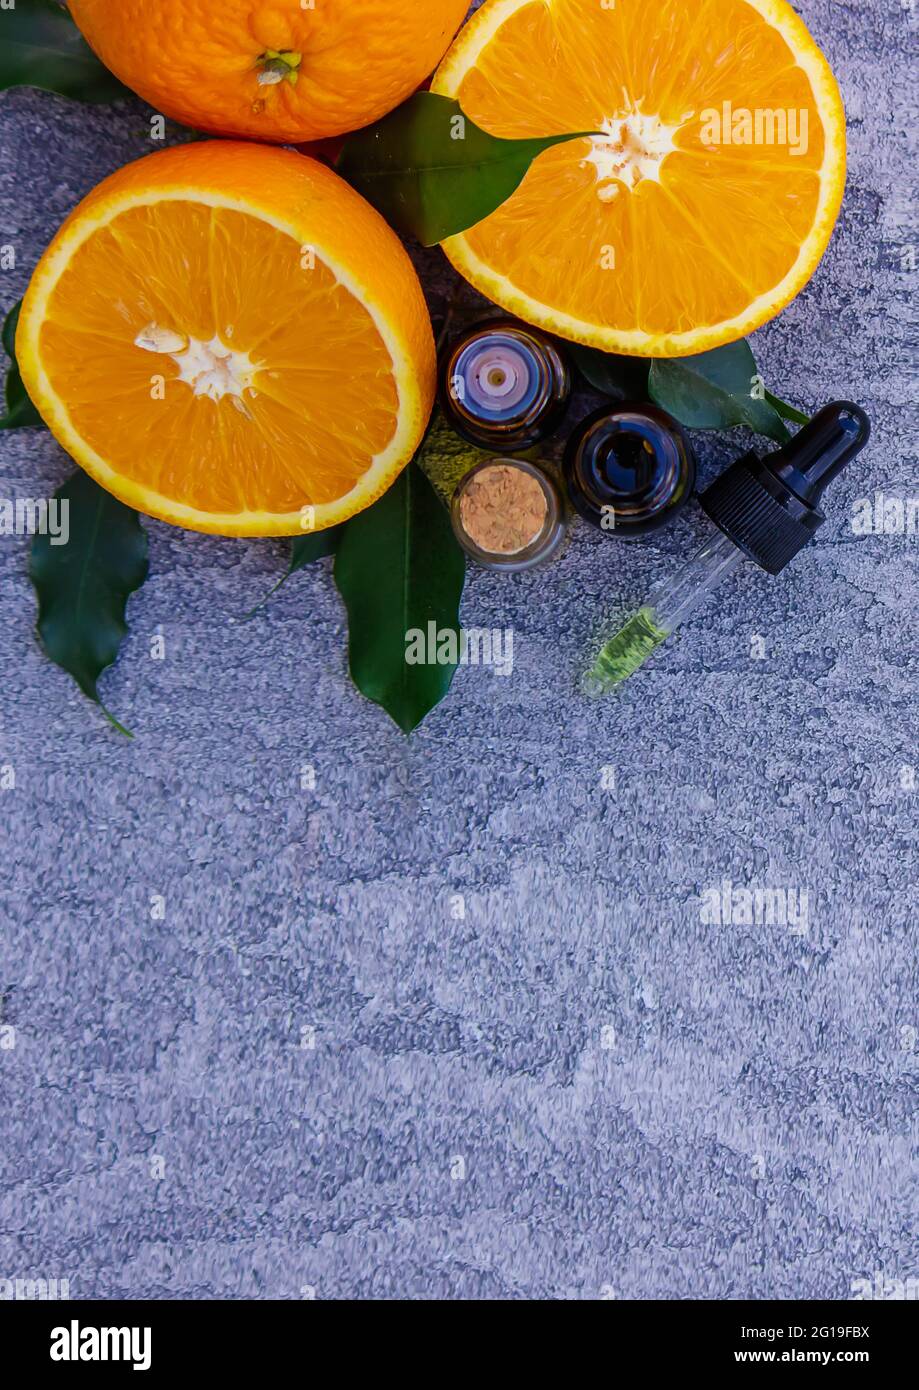 Huile d'orange essentielle dans une bouteille, morceaux de fruits frais sur le fond. Saveurs naturelles. Mise au point sélective Banque D'Images